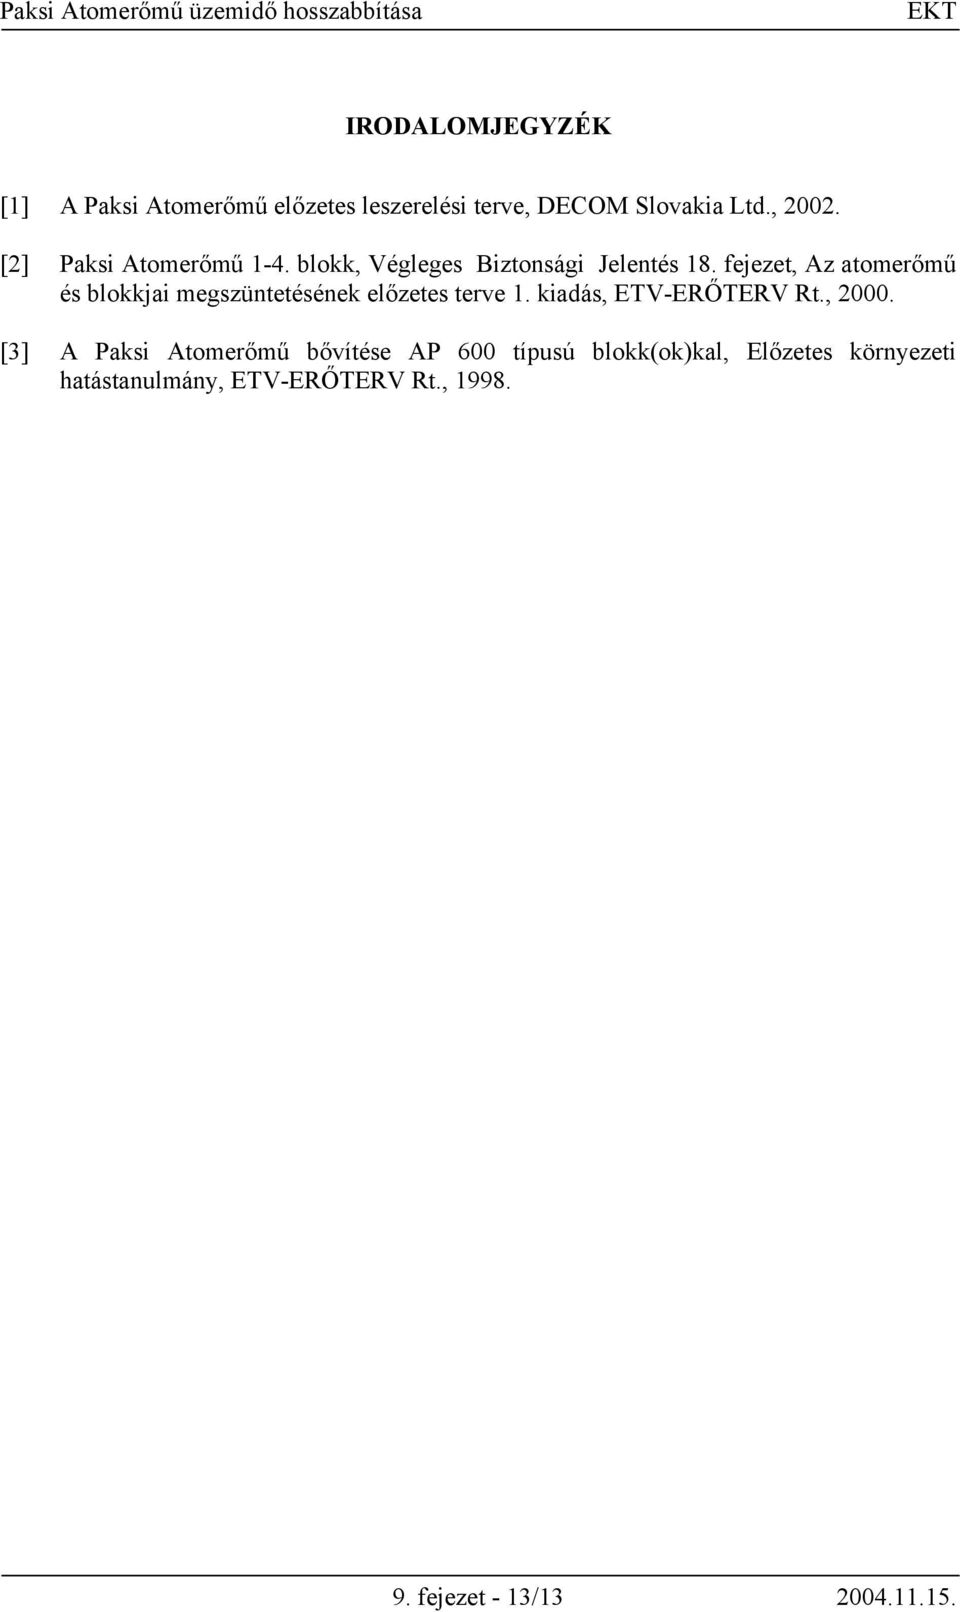 fejezet, Az atomerőmű és blokkjai megszüntetésének előzetes terve 1. kiadás, ETV-ERŐTERV Rt., 2000.